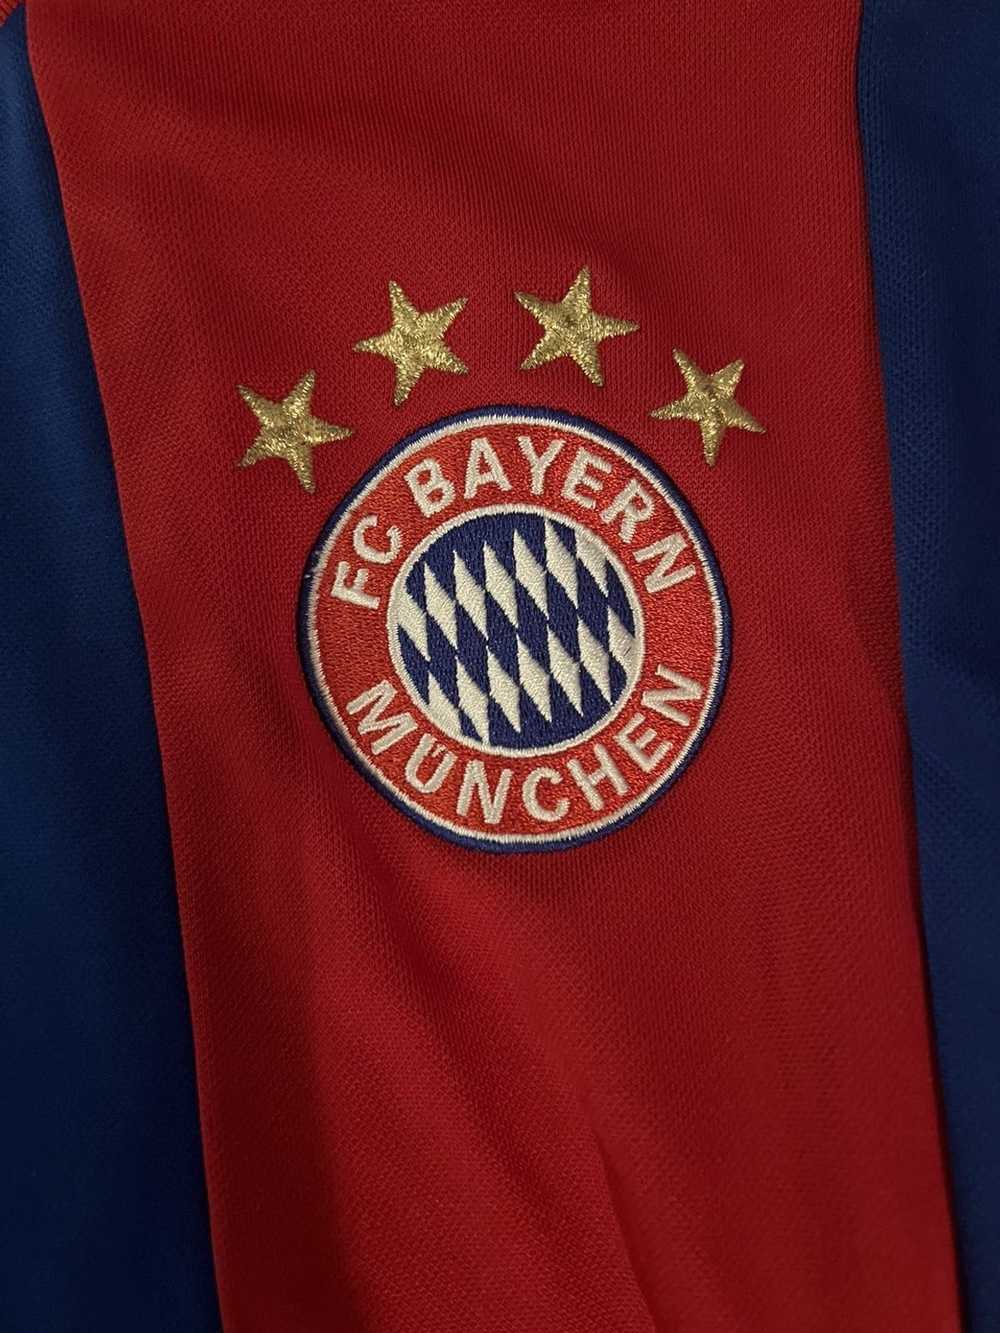 Adidas Bayern Munich 2010’s zip up jacket - image 3